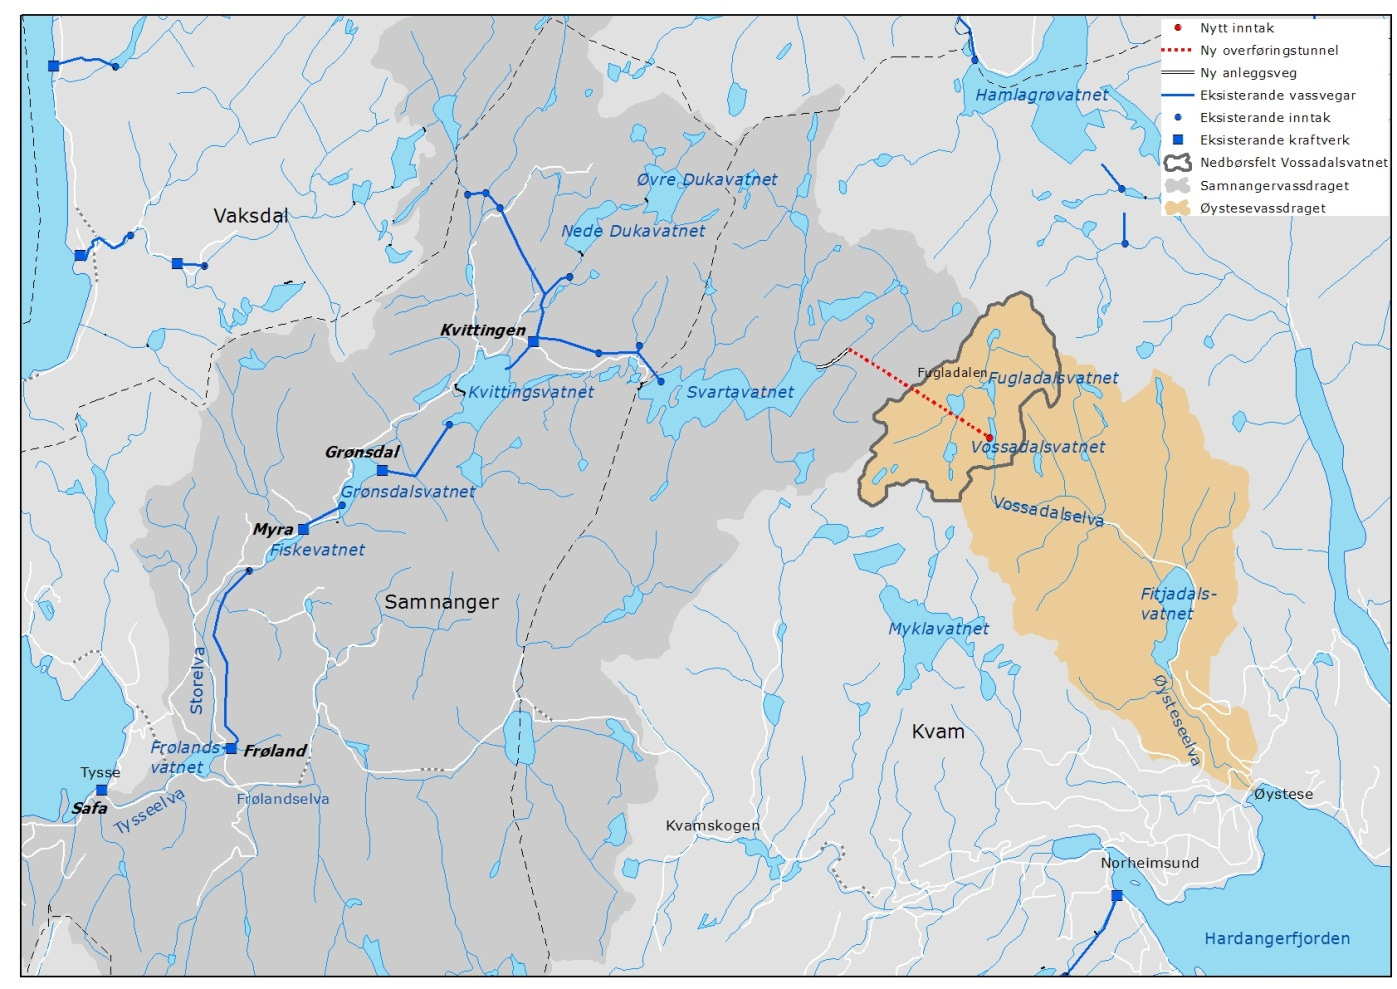 4 Tekniske planer 4.1 Om prosjektet BKK ynskjer å overføre om lag ein fjerdedel av nedbørsfeltet i Øystesevassdraget til regulert kraftproduksjon i BKK sine anlegg i Samnangervassdraget.